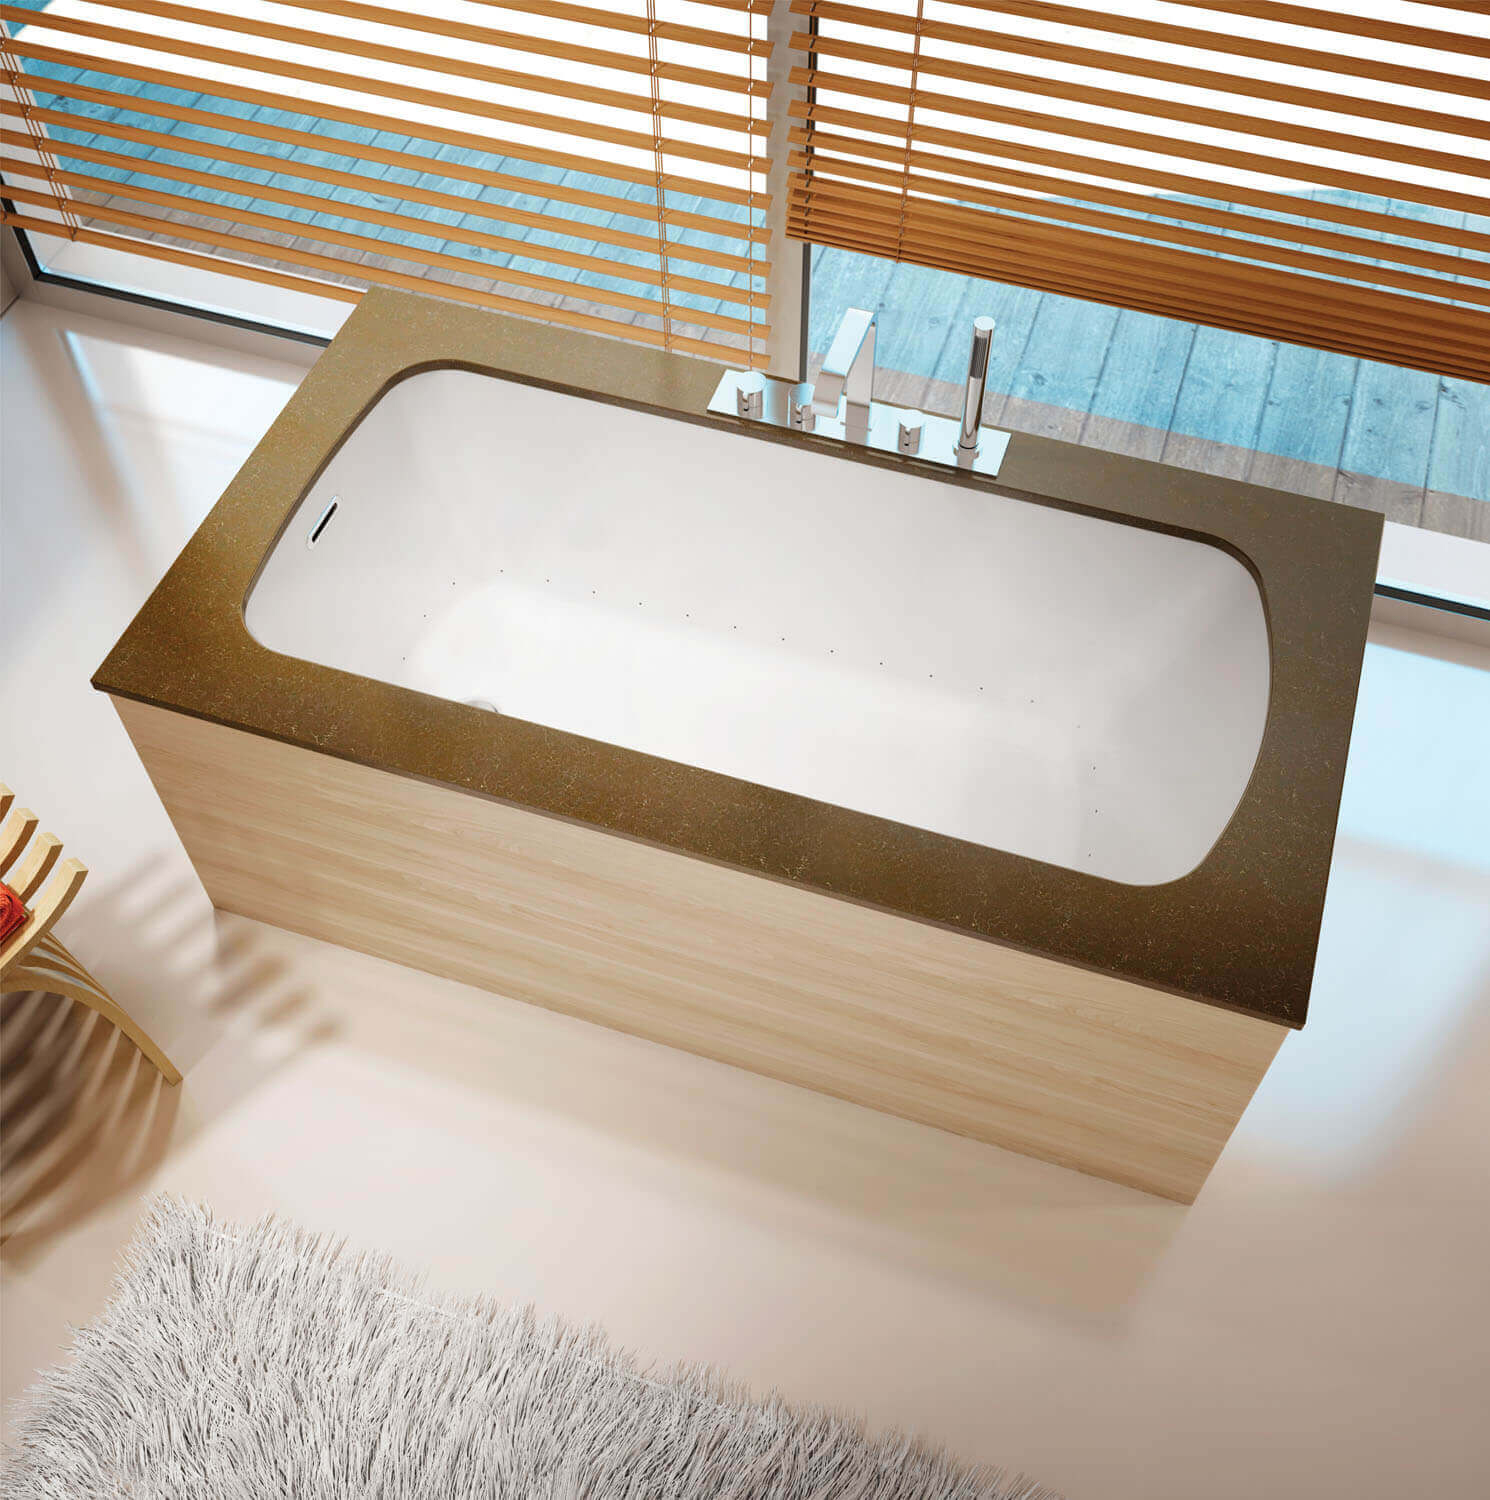 Monarch 6032 air jet bathtub for your modern bathroom